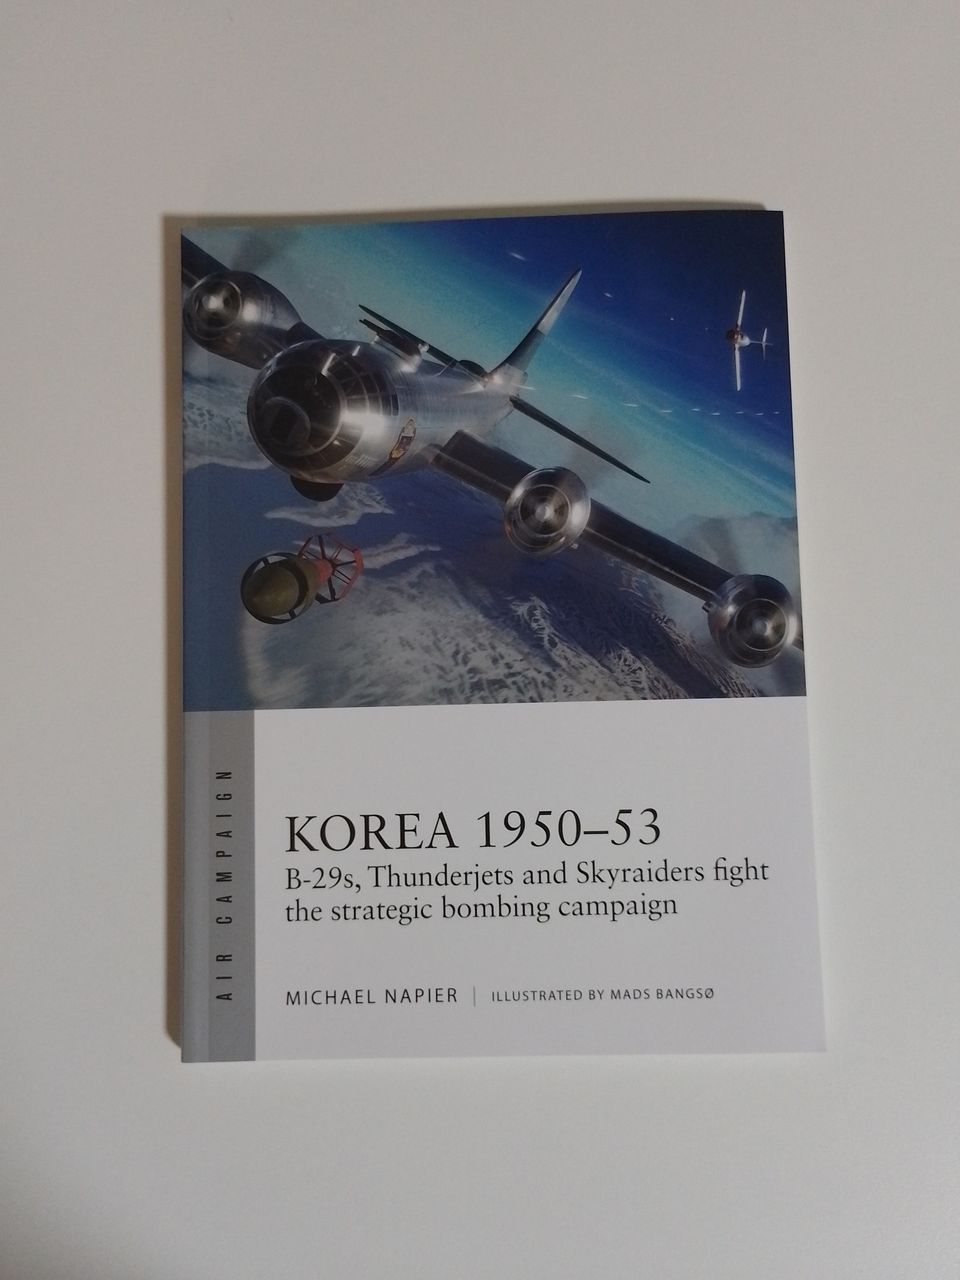 Sotahistoria: Air Campaign nr 39 - "Korea 1950-53"